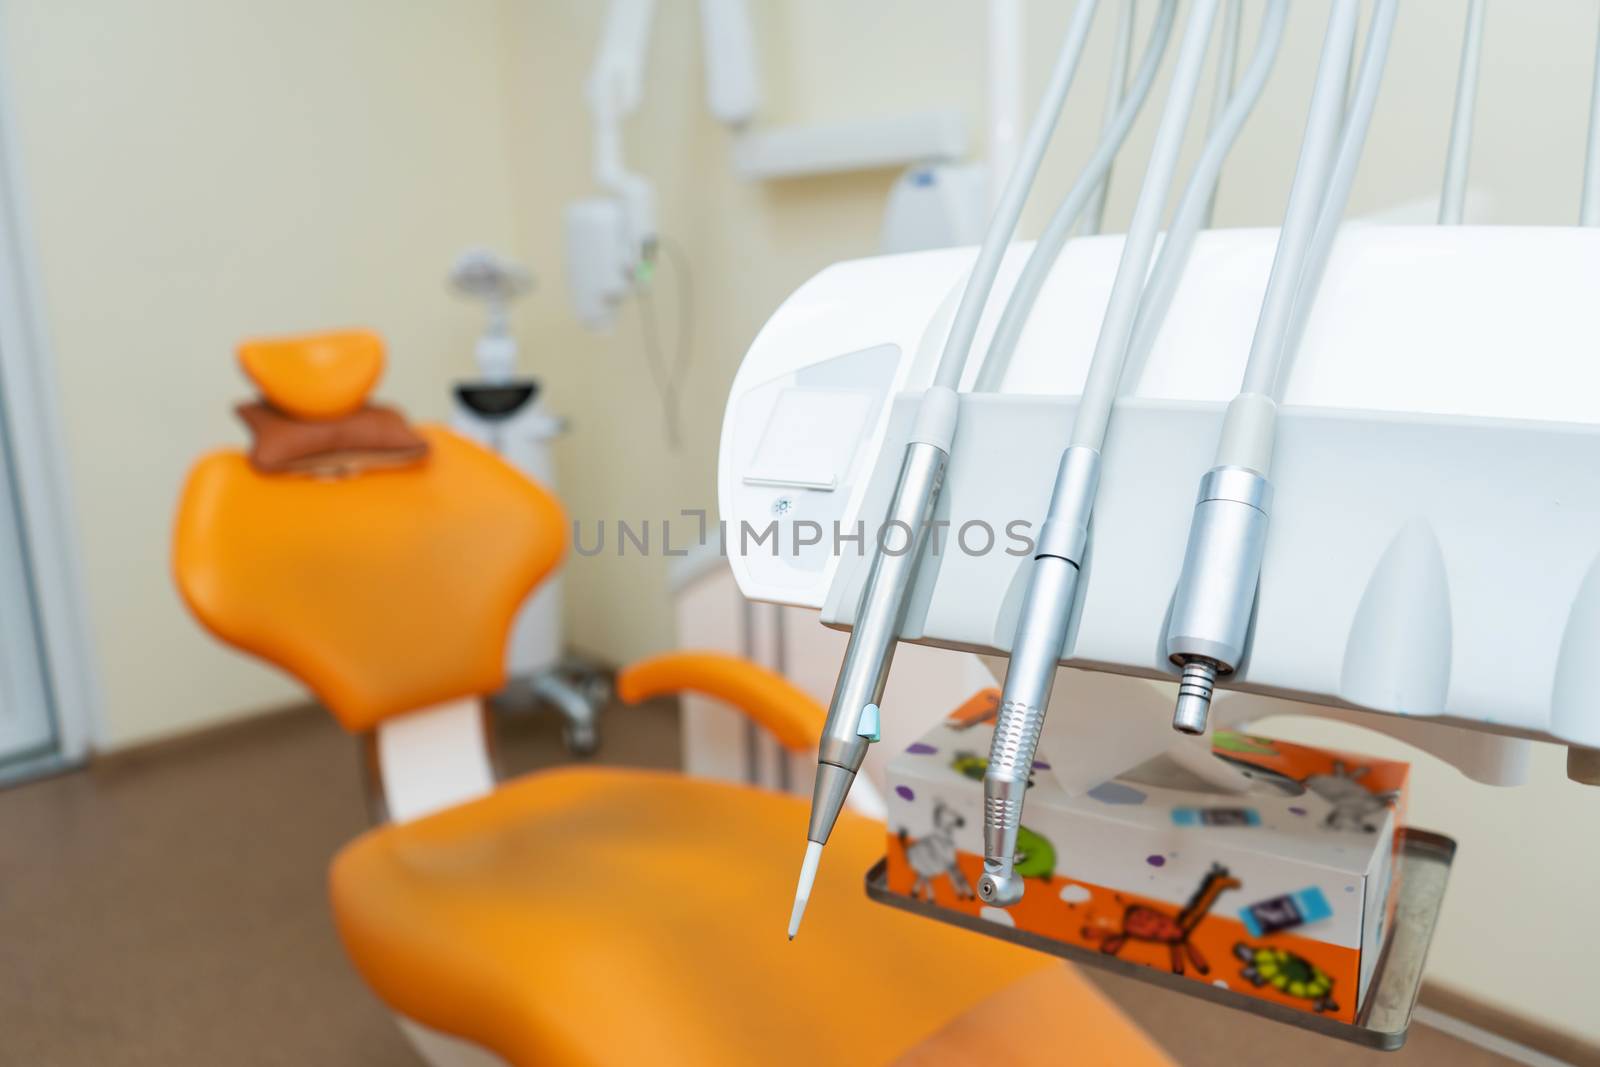 Interior stylish modern dentist office in orange style